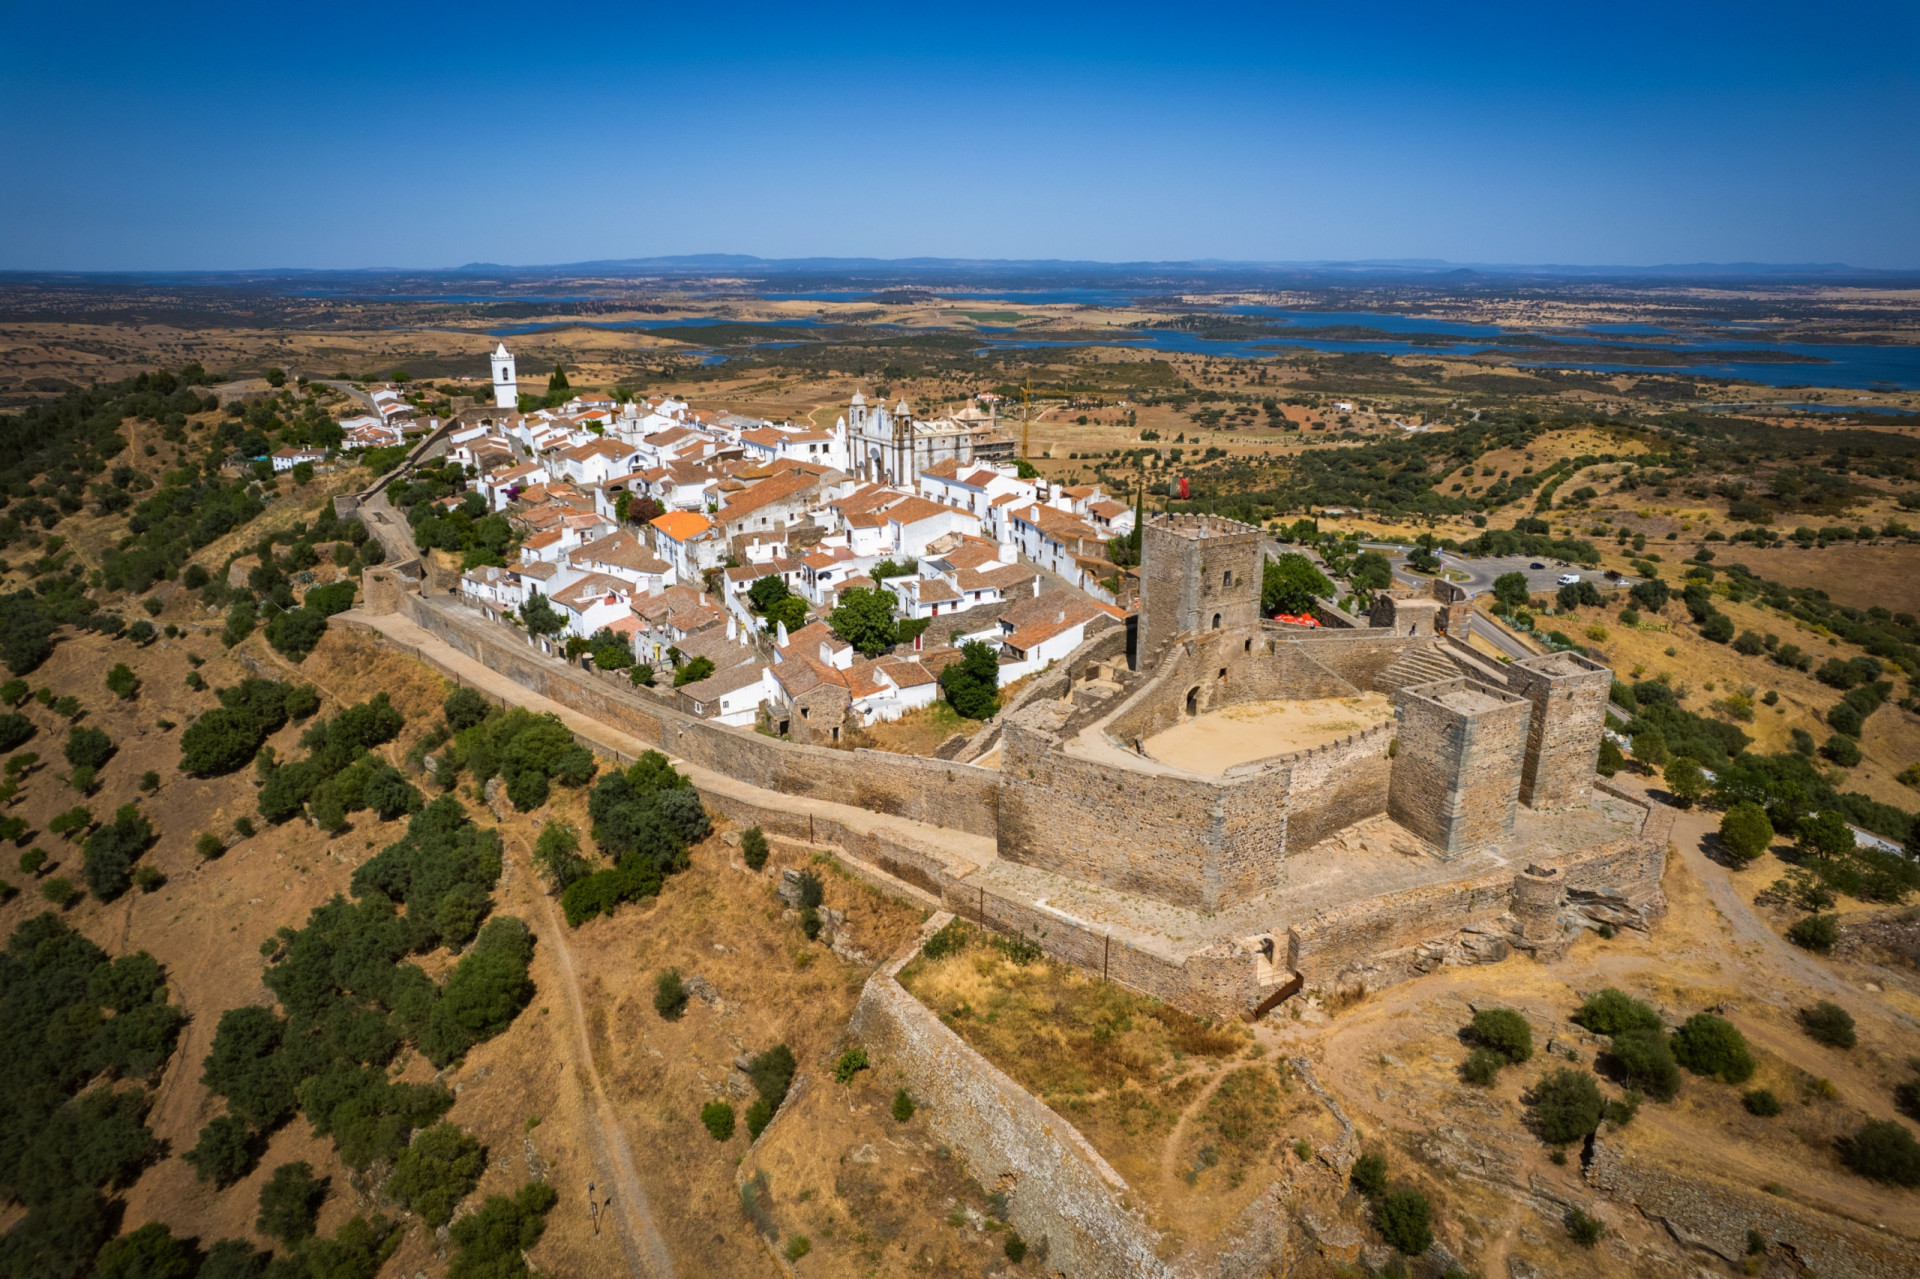 <p>Monsaraz est l'exemple même du village de colline portugais classique. Établi en tant que communauté par les Maures au VIIIe siècle, son château et ses murs datent, pour la plupart, du XIIe siècle. Sa situation élevée dans l'Alentejo, à quelques kilomètres à peine de l'Espagne, a fait de Monsaraz un lieu d'importance stratégique pendant des siècles.</p><p><a href="https://www.msn.com/fr-fr/community/channel/vid-7xx8mnucu55yw63we9va2gwr7uihbxwc68fxqp25x6tg4ftibpra?cvid=94631541bc0f4f89bfd59158d696ad7e">Suivez-nous et accédez tous les jours à du contenu exclusif</a></p>